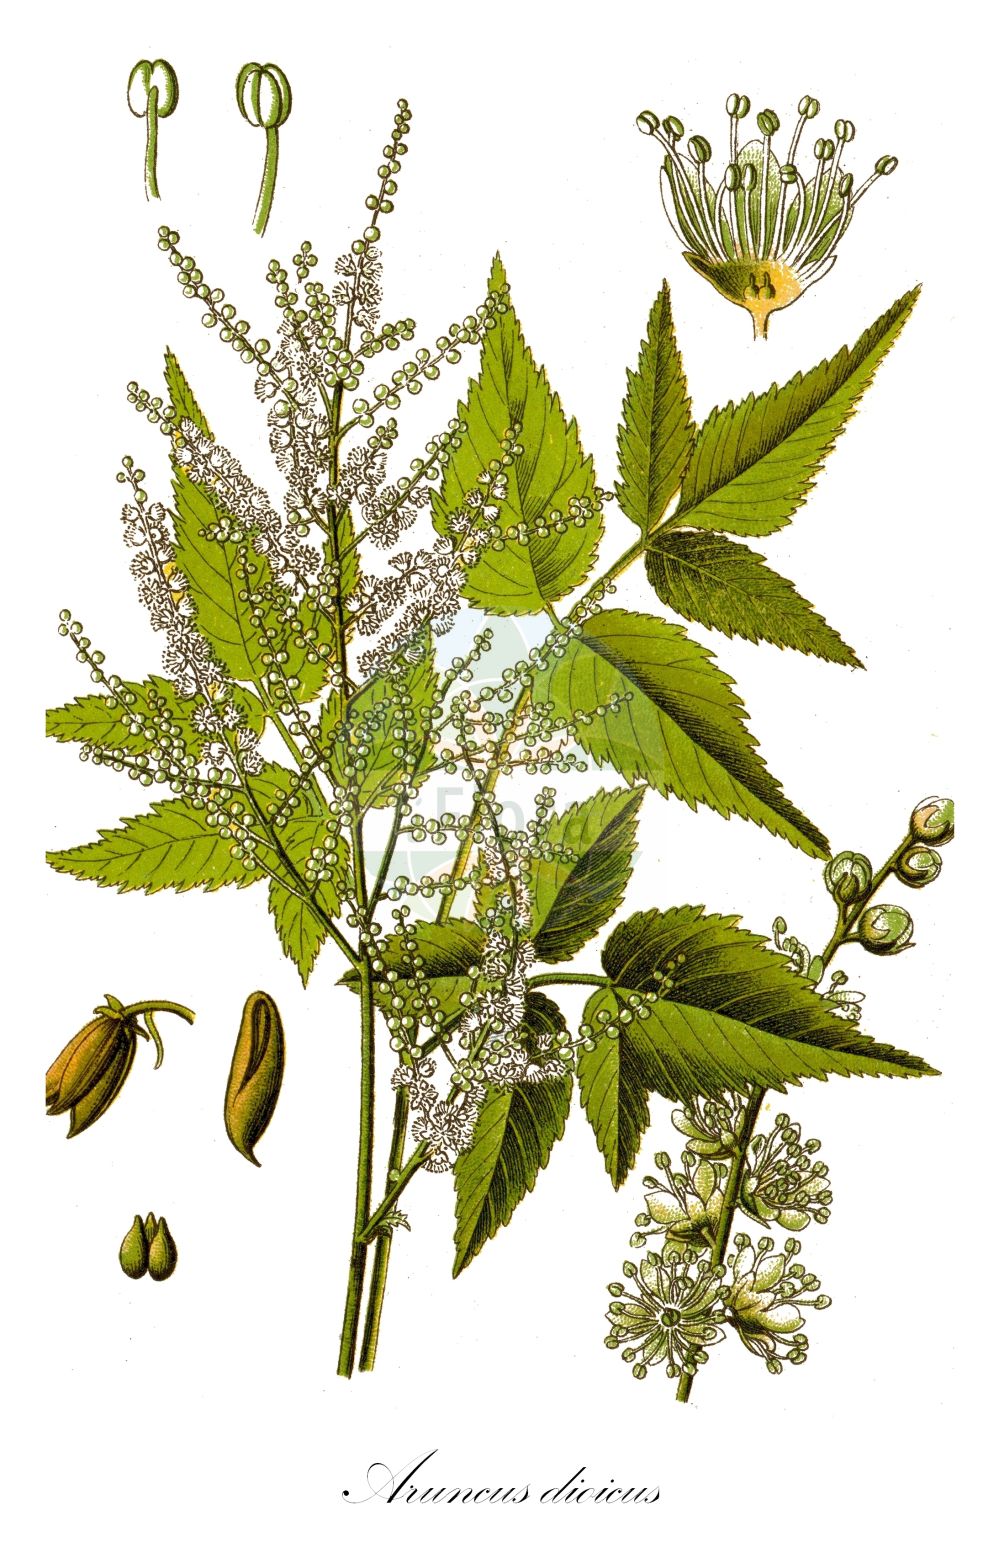 Historische Abbildung von Aruncus dioicus (Wald-Geißbart - Buck's-beard). Das Bild zeigt Blatt, Bluete, Frucht und Same. ---- Historical Drawing of Aruncus dioicus (Wald-Geißbart - Buck's-beard). The image is showing leaf, flower, fruit and seed.(Aruncus dioicus,Wald-Geißbart,Buck's-beard,Actaea dioica,Aruncus dioicus,Aruncus sylvestris,Aruncus vulgaris,Astilbe aruncus,Spiraea aruncus,Ulmaria aruncus,Wald-Geissbart,Buck's-beard,Goatsbeard,Bride's Feathers,Aruncus,Geißbart,Goatsbeard,Rosaceae,Rosengewächse,Rose family,Blatt,Bluete,Frucht,Same,leaf,flower,fruit,seed,Sturm (1796f))